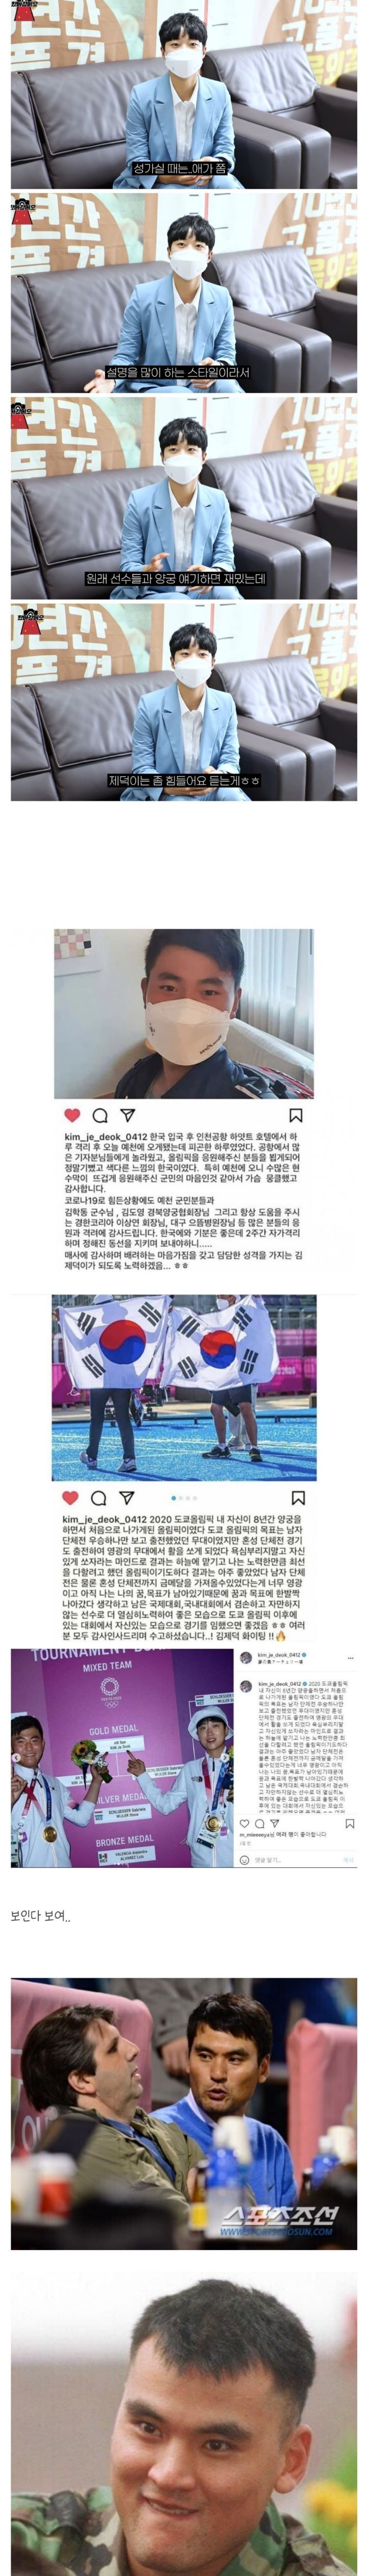 김제덕 폭로하는 안산선수..jpg